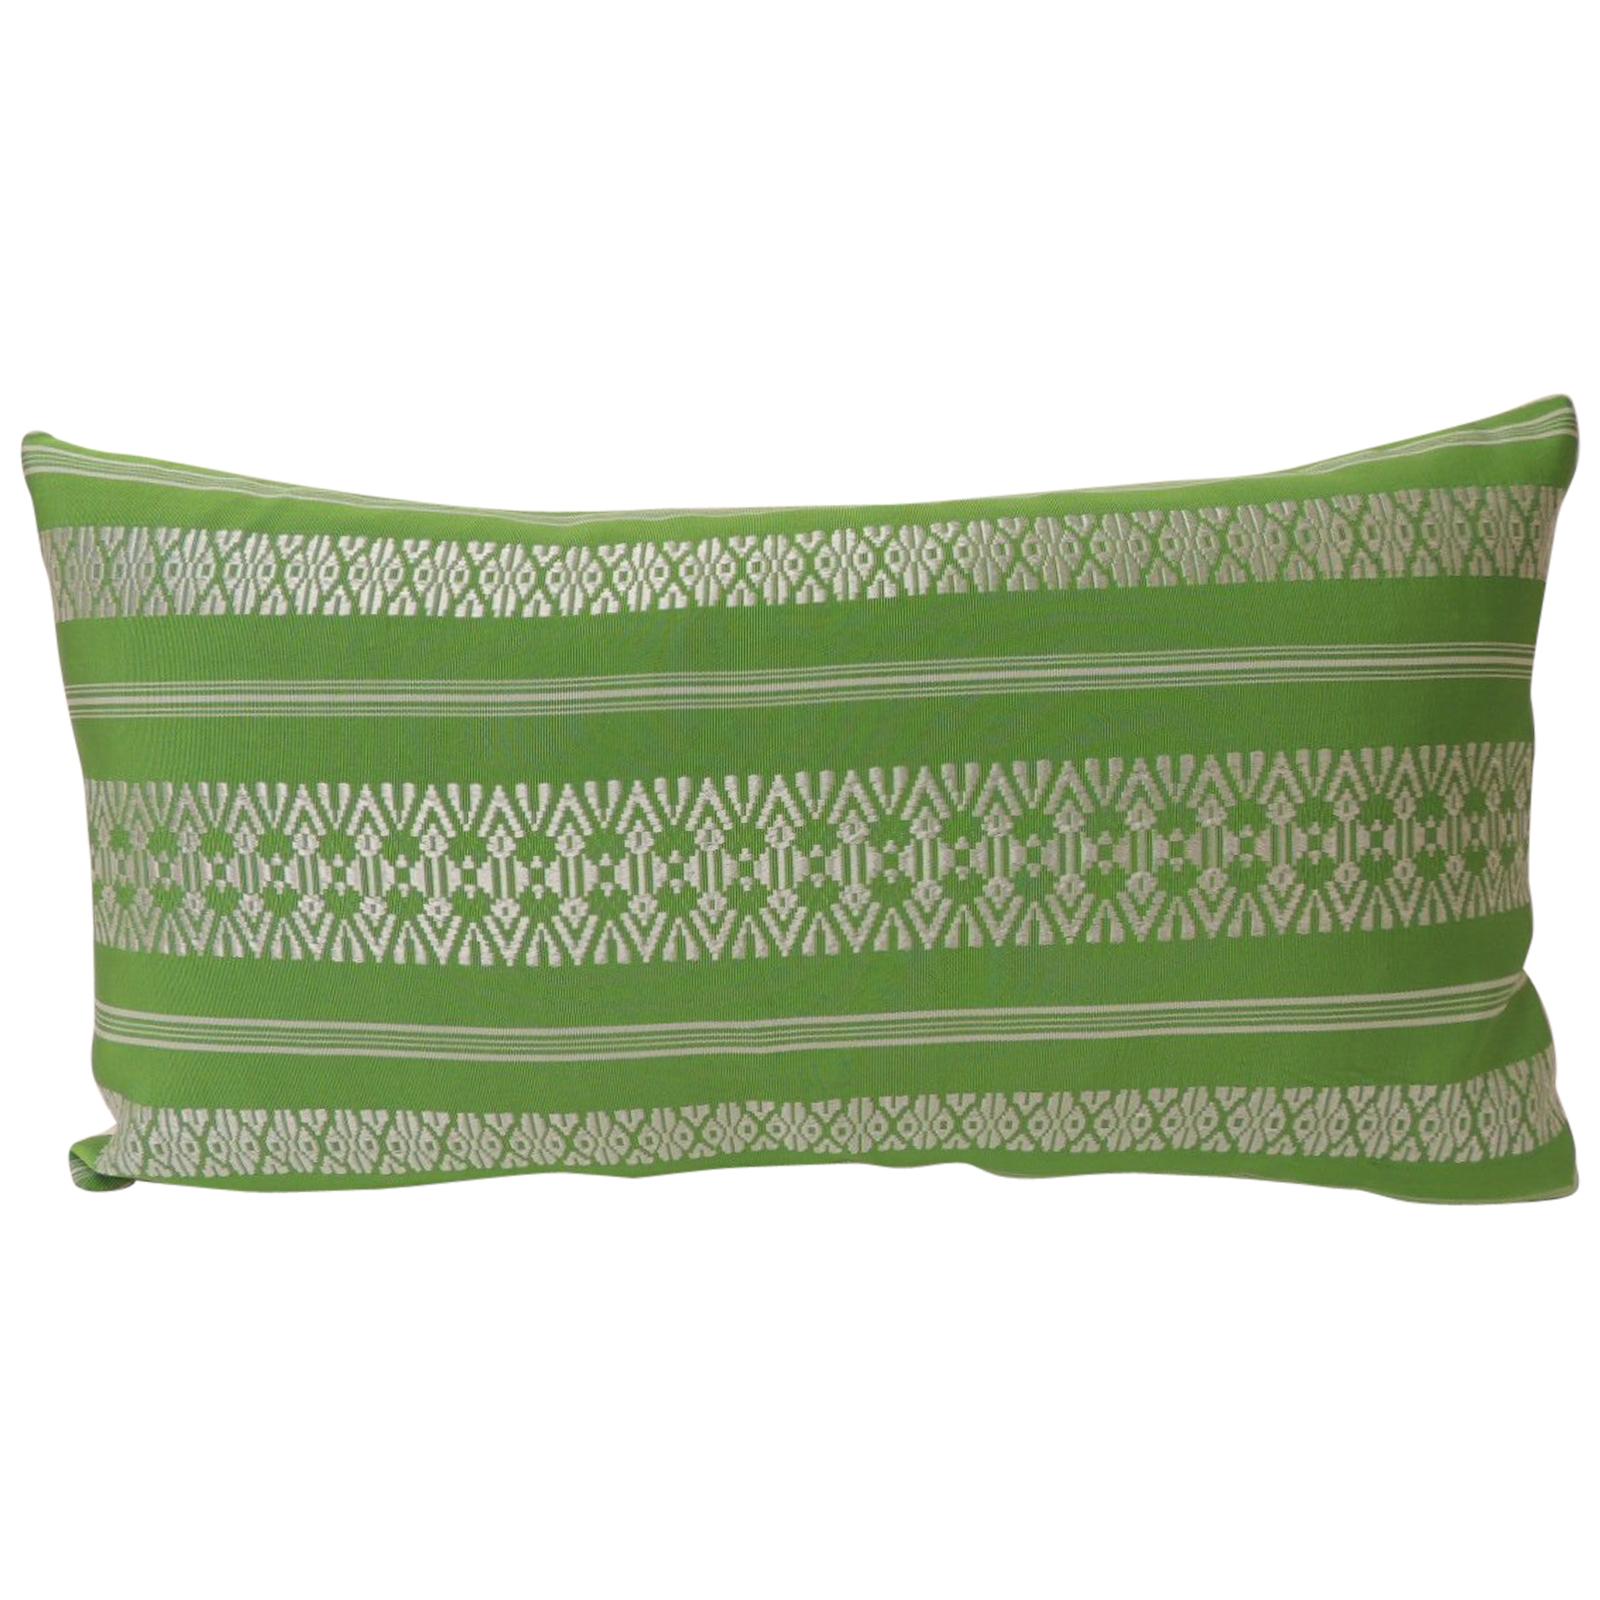 Vintage Acid Green Woven Silk Asian Decorative Lumbar Pillow